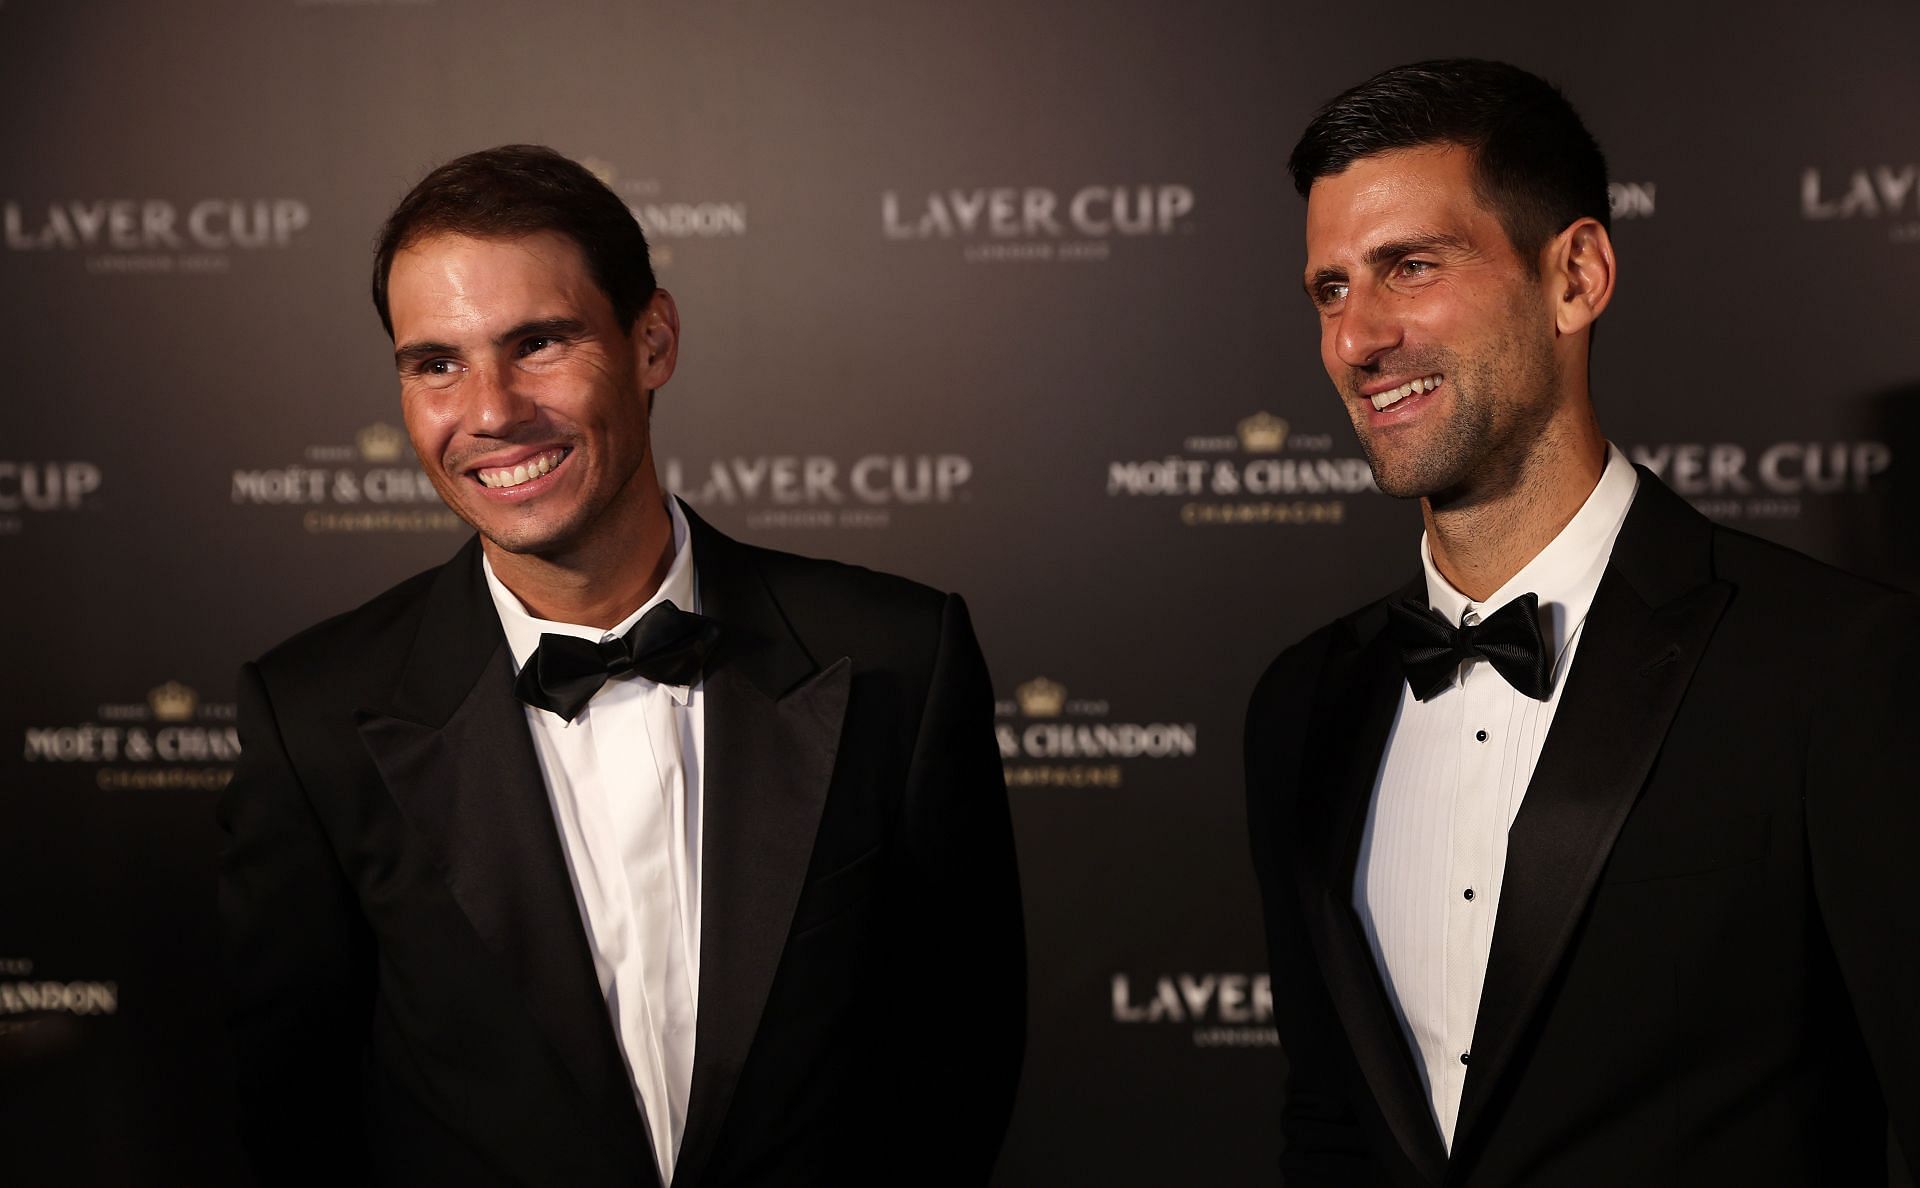 Rafael Nadal and Novak Djokovic at the 2022 Laver Cup.